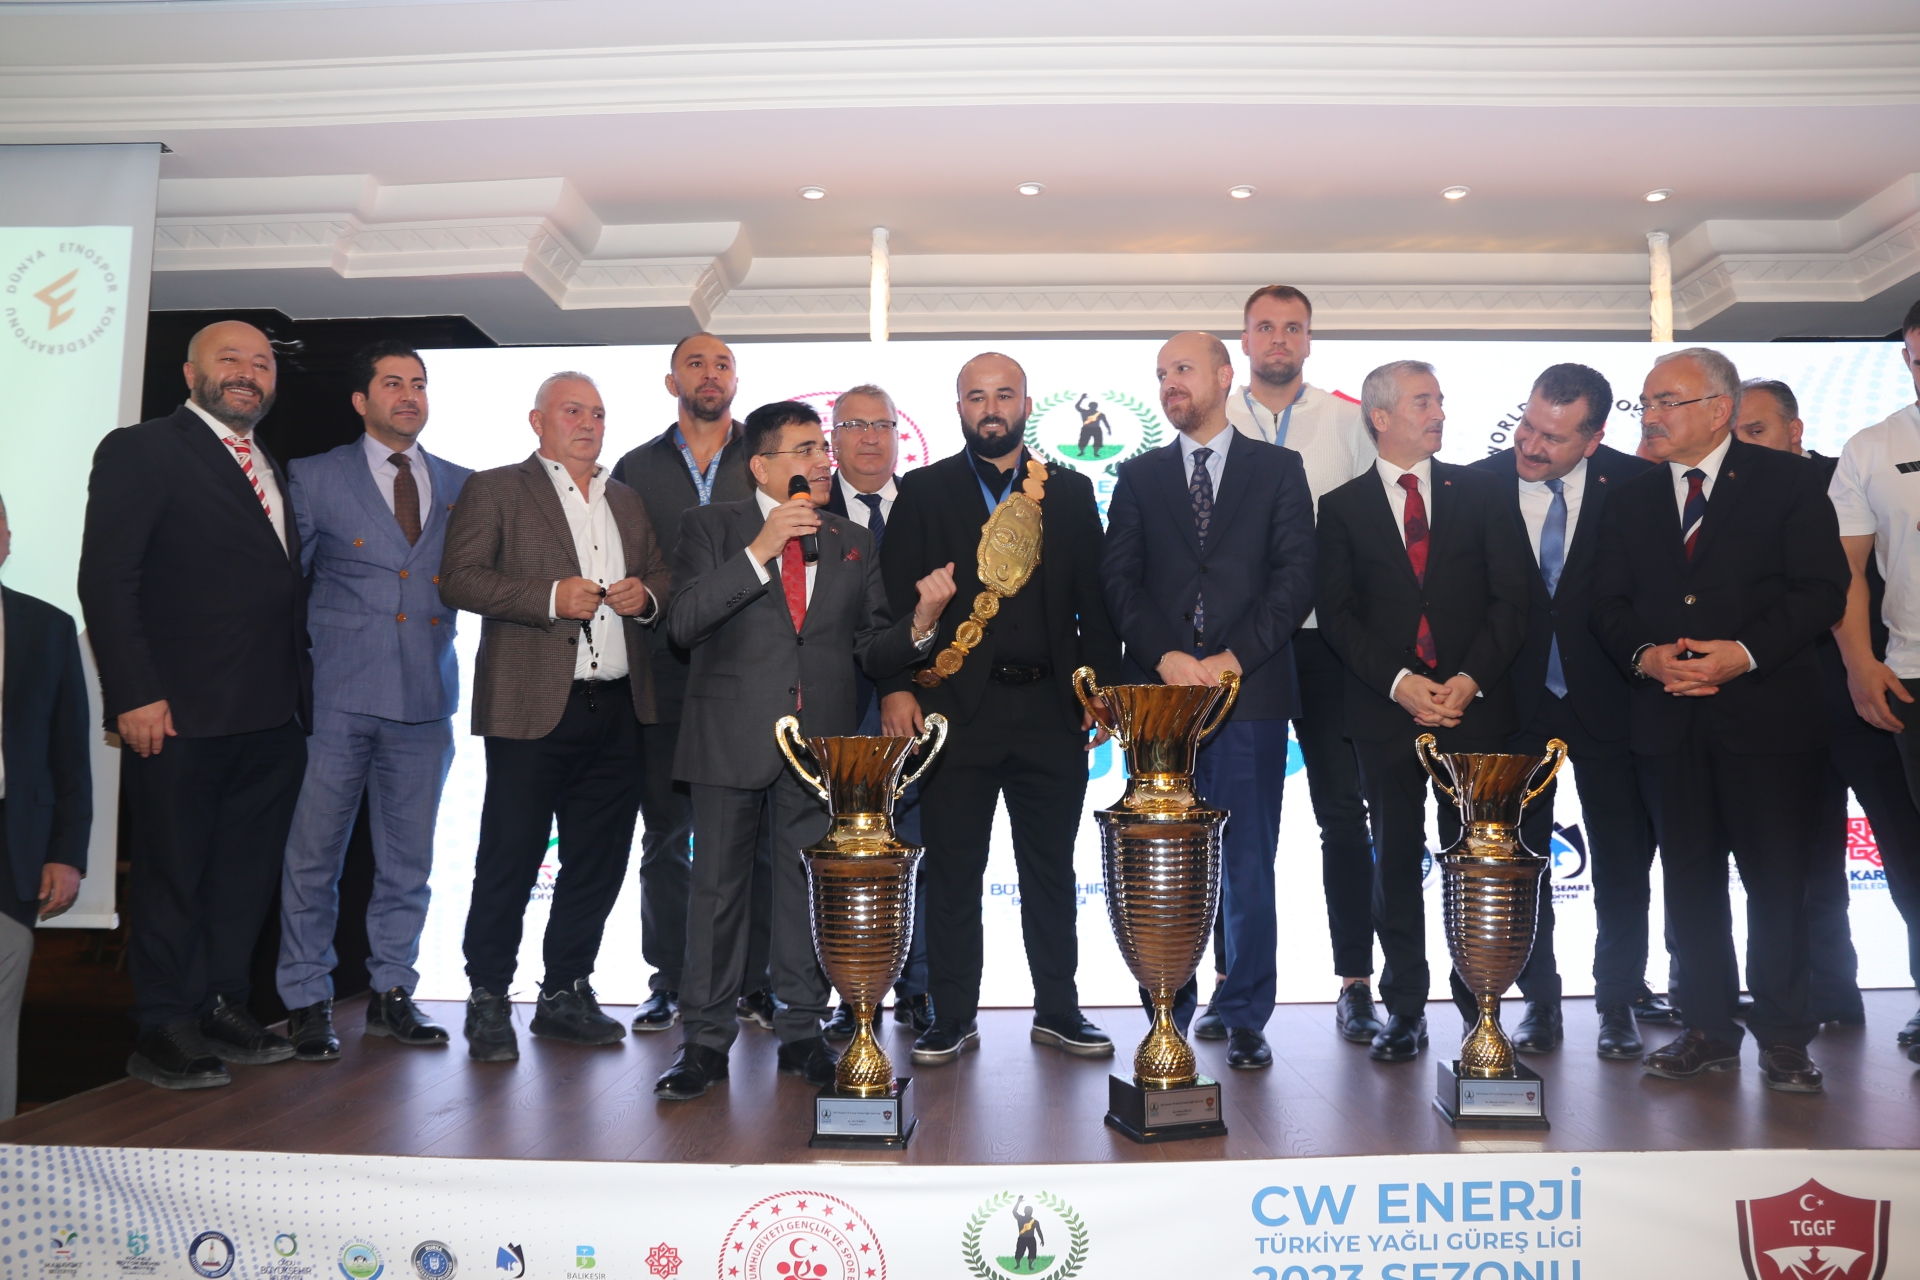 CW Enerji Yağlı Güreş Ligi Ödül Töreni gerçekleştirildi